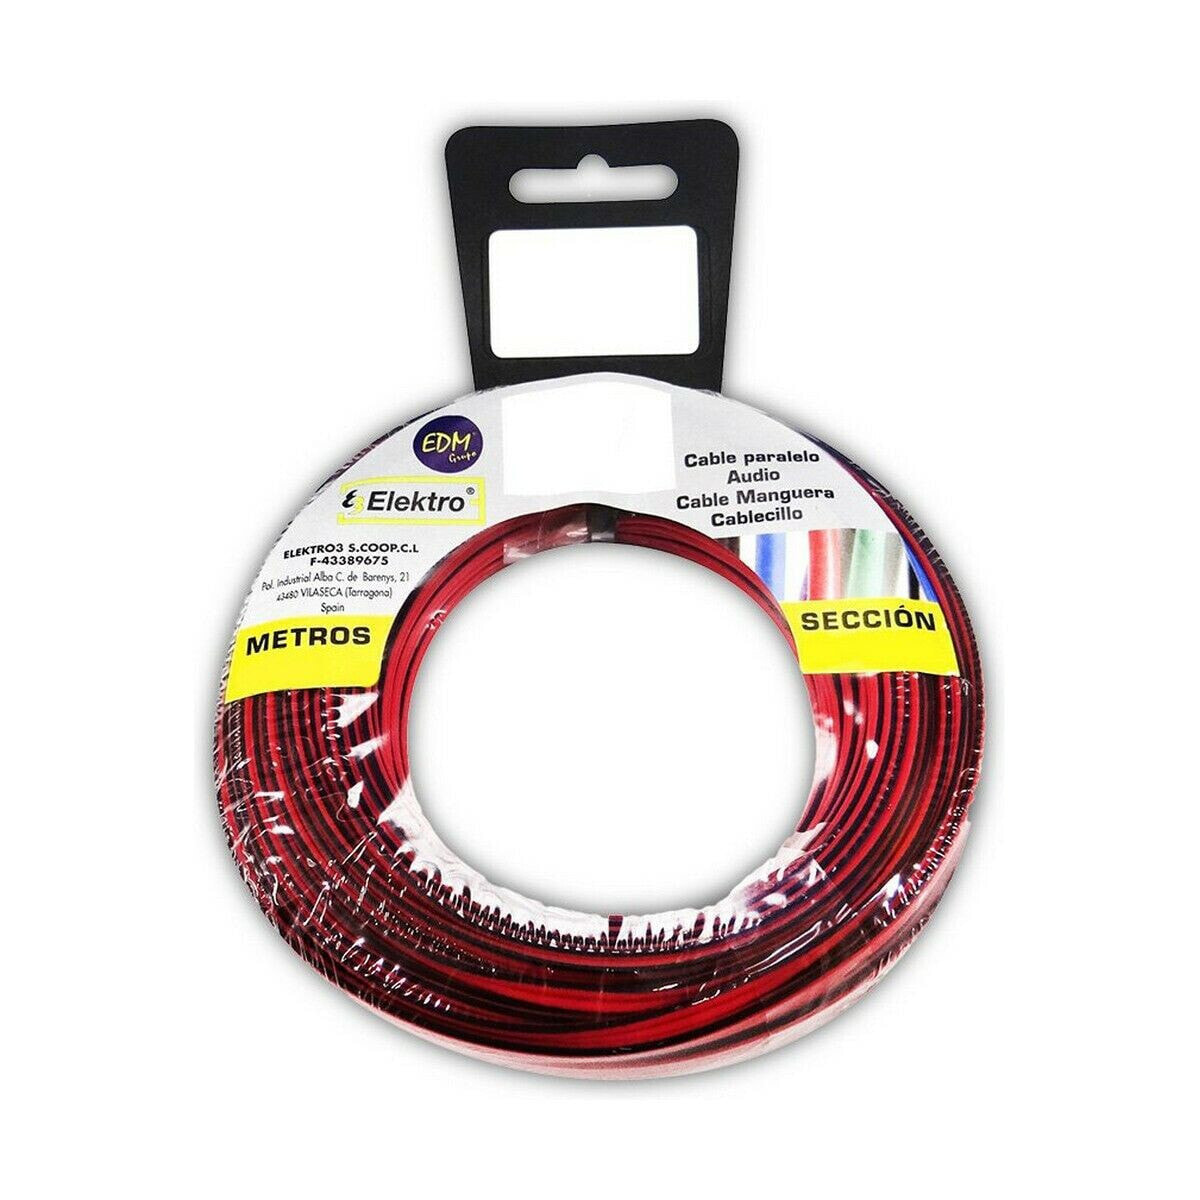 Аудио кабель EDM 2 x 0,75 mm Красный/Черный 20 m